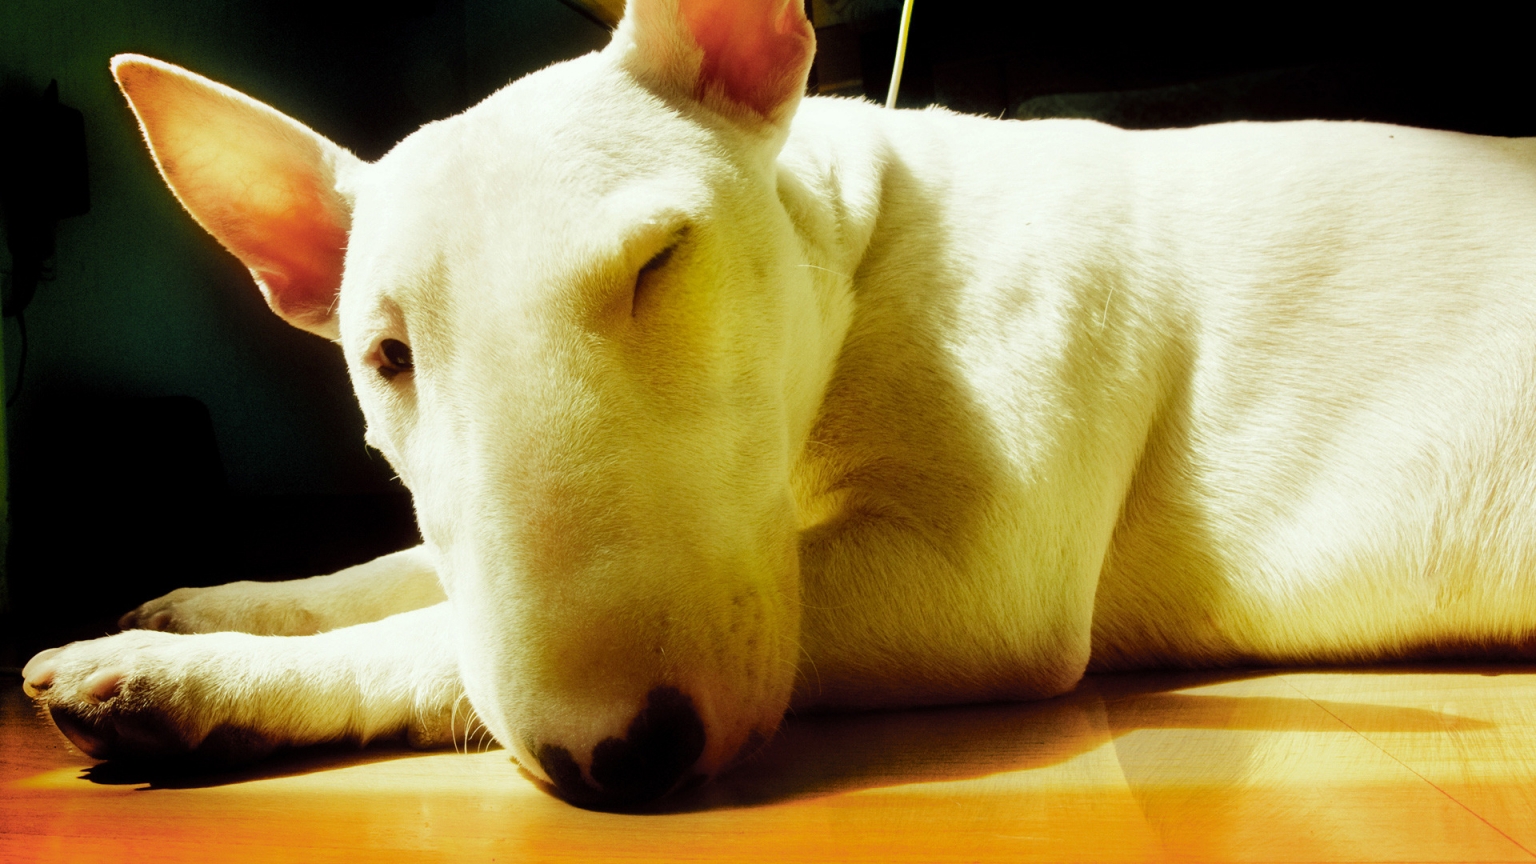 Cute Bull Terrier for 1536 x 864 HDTV resolution